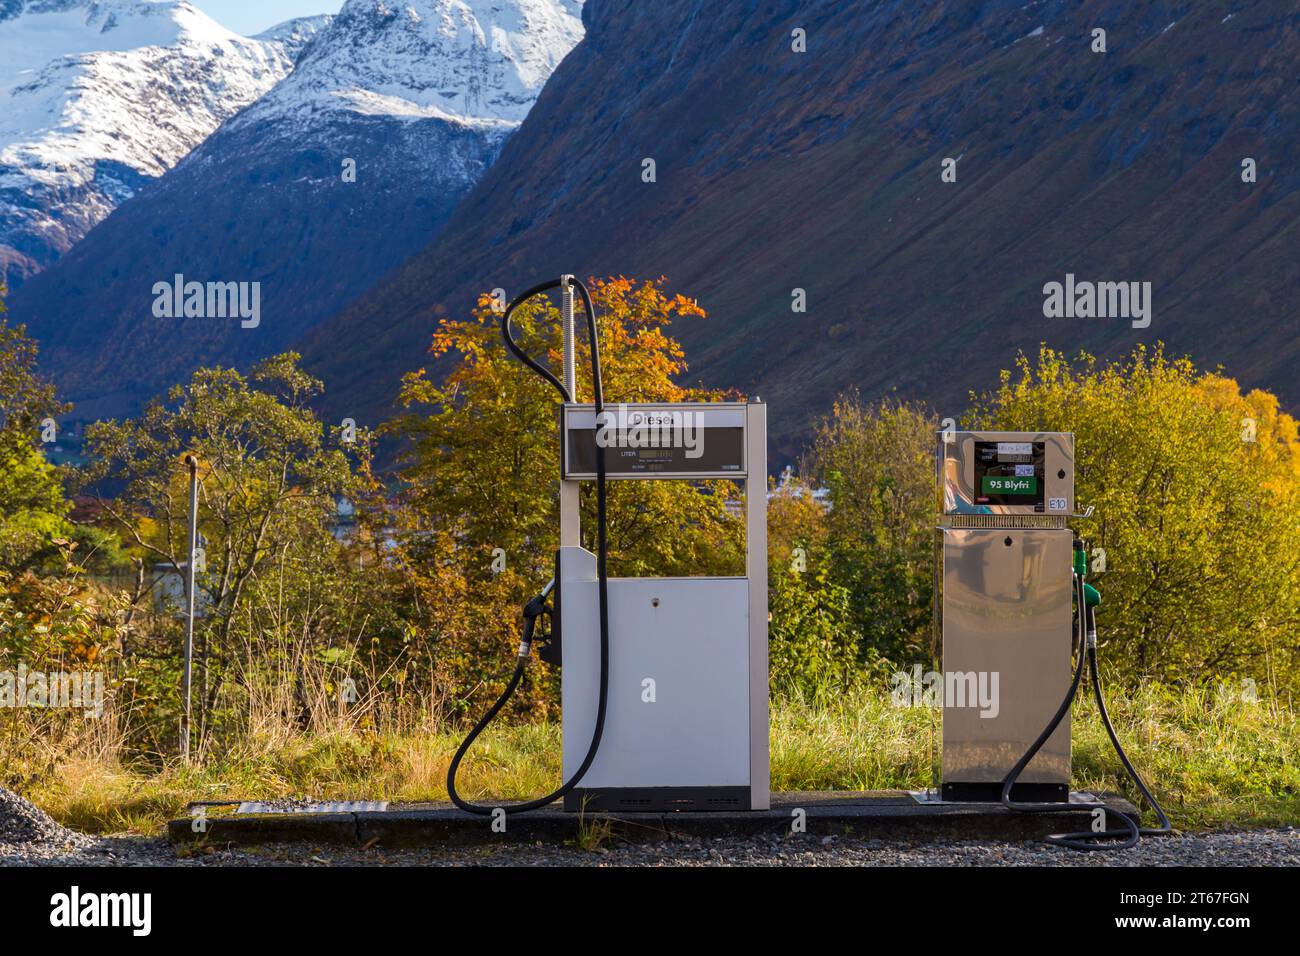 Pompes à essence, pompe diesel, dans un cadre magnifique à Urke, Norvège, Scandinavie, Europe en octobre Banque D'Images